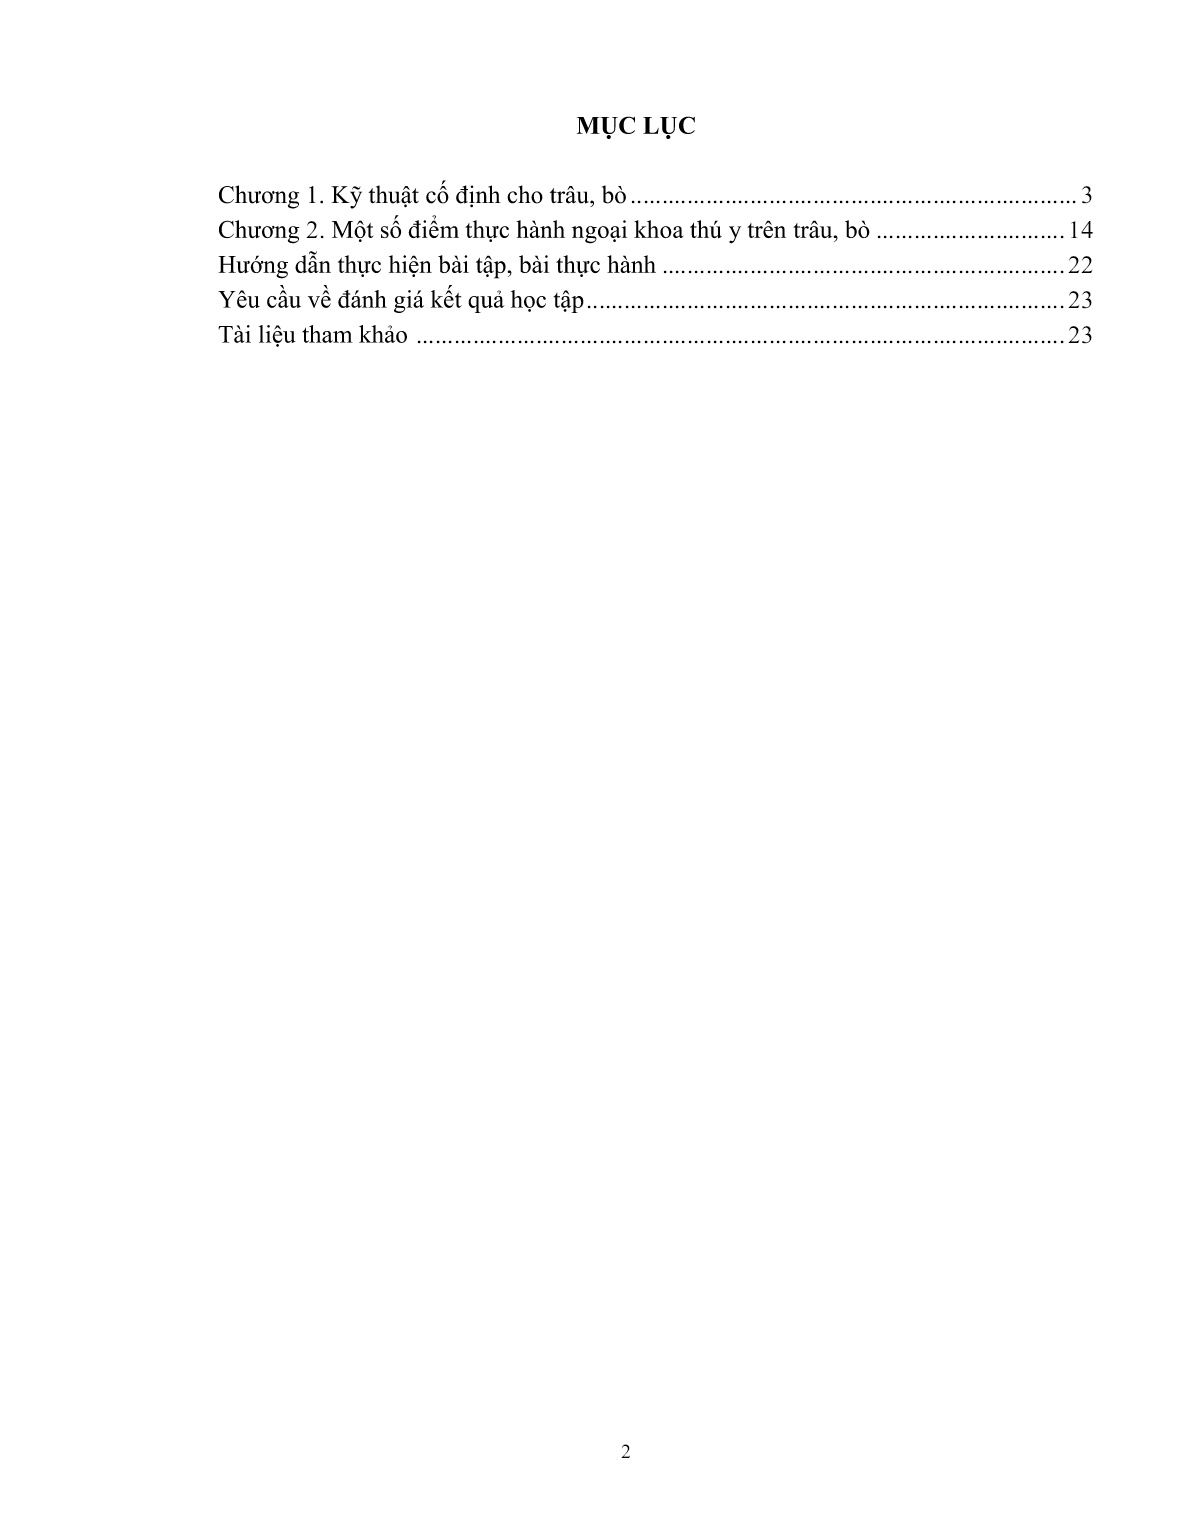 Giáo trình Kỹ thuật thực hành chăn nuôi – thú y áp dụng cho trâu, bò (Trình độ: Đào tạo dưới 3 tháng) trang 3